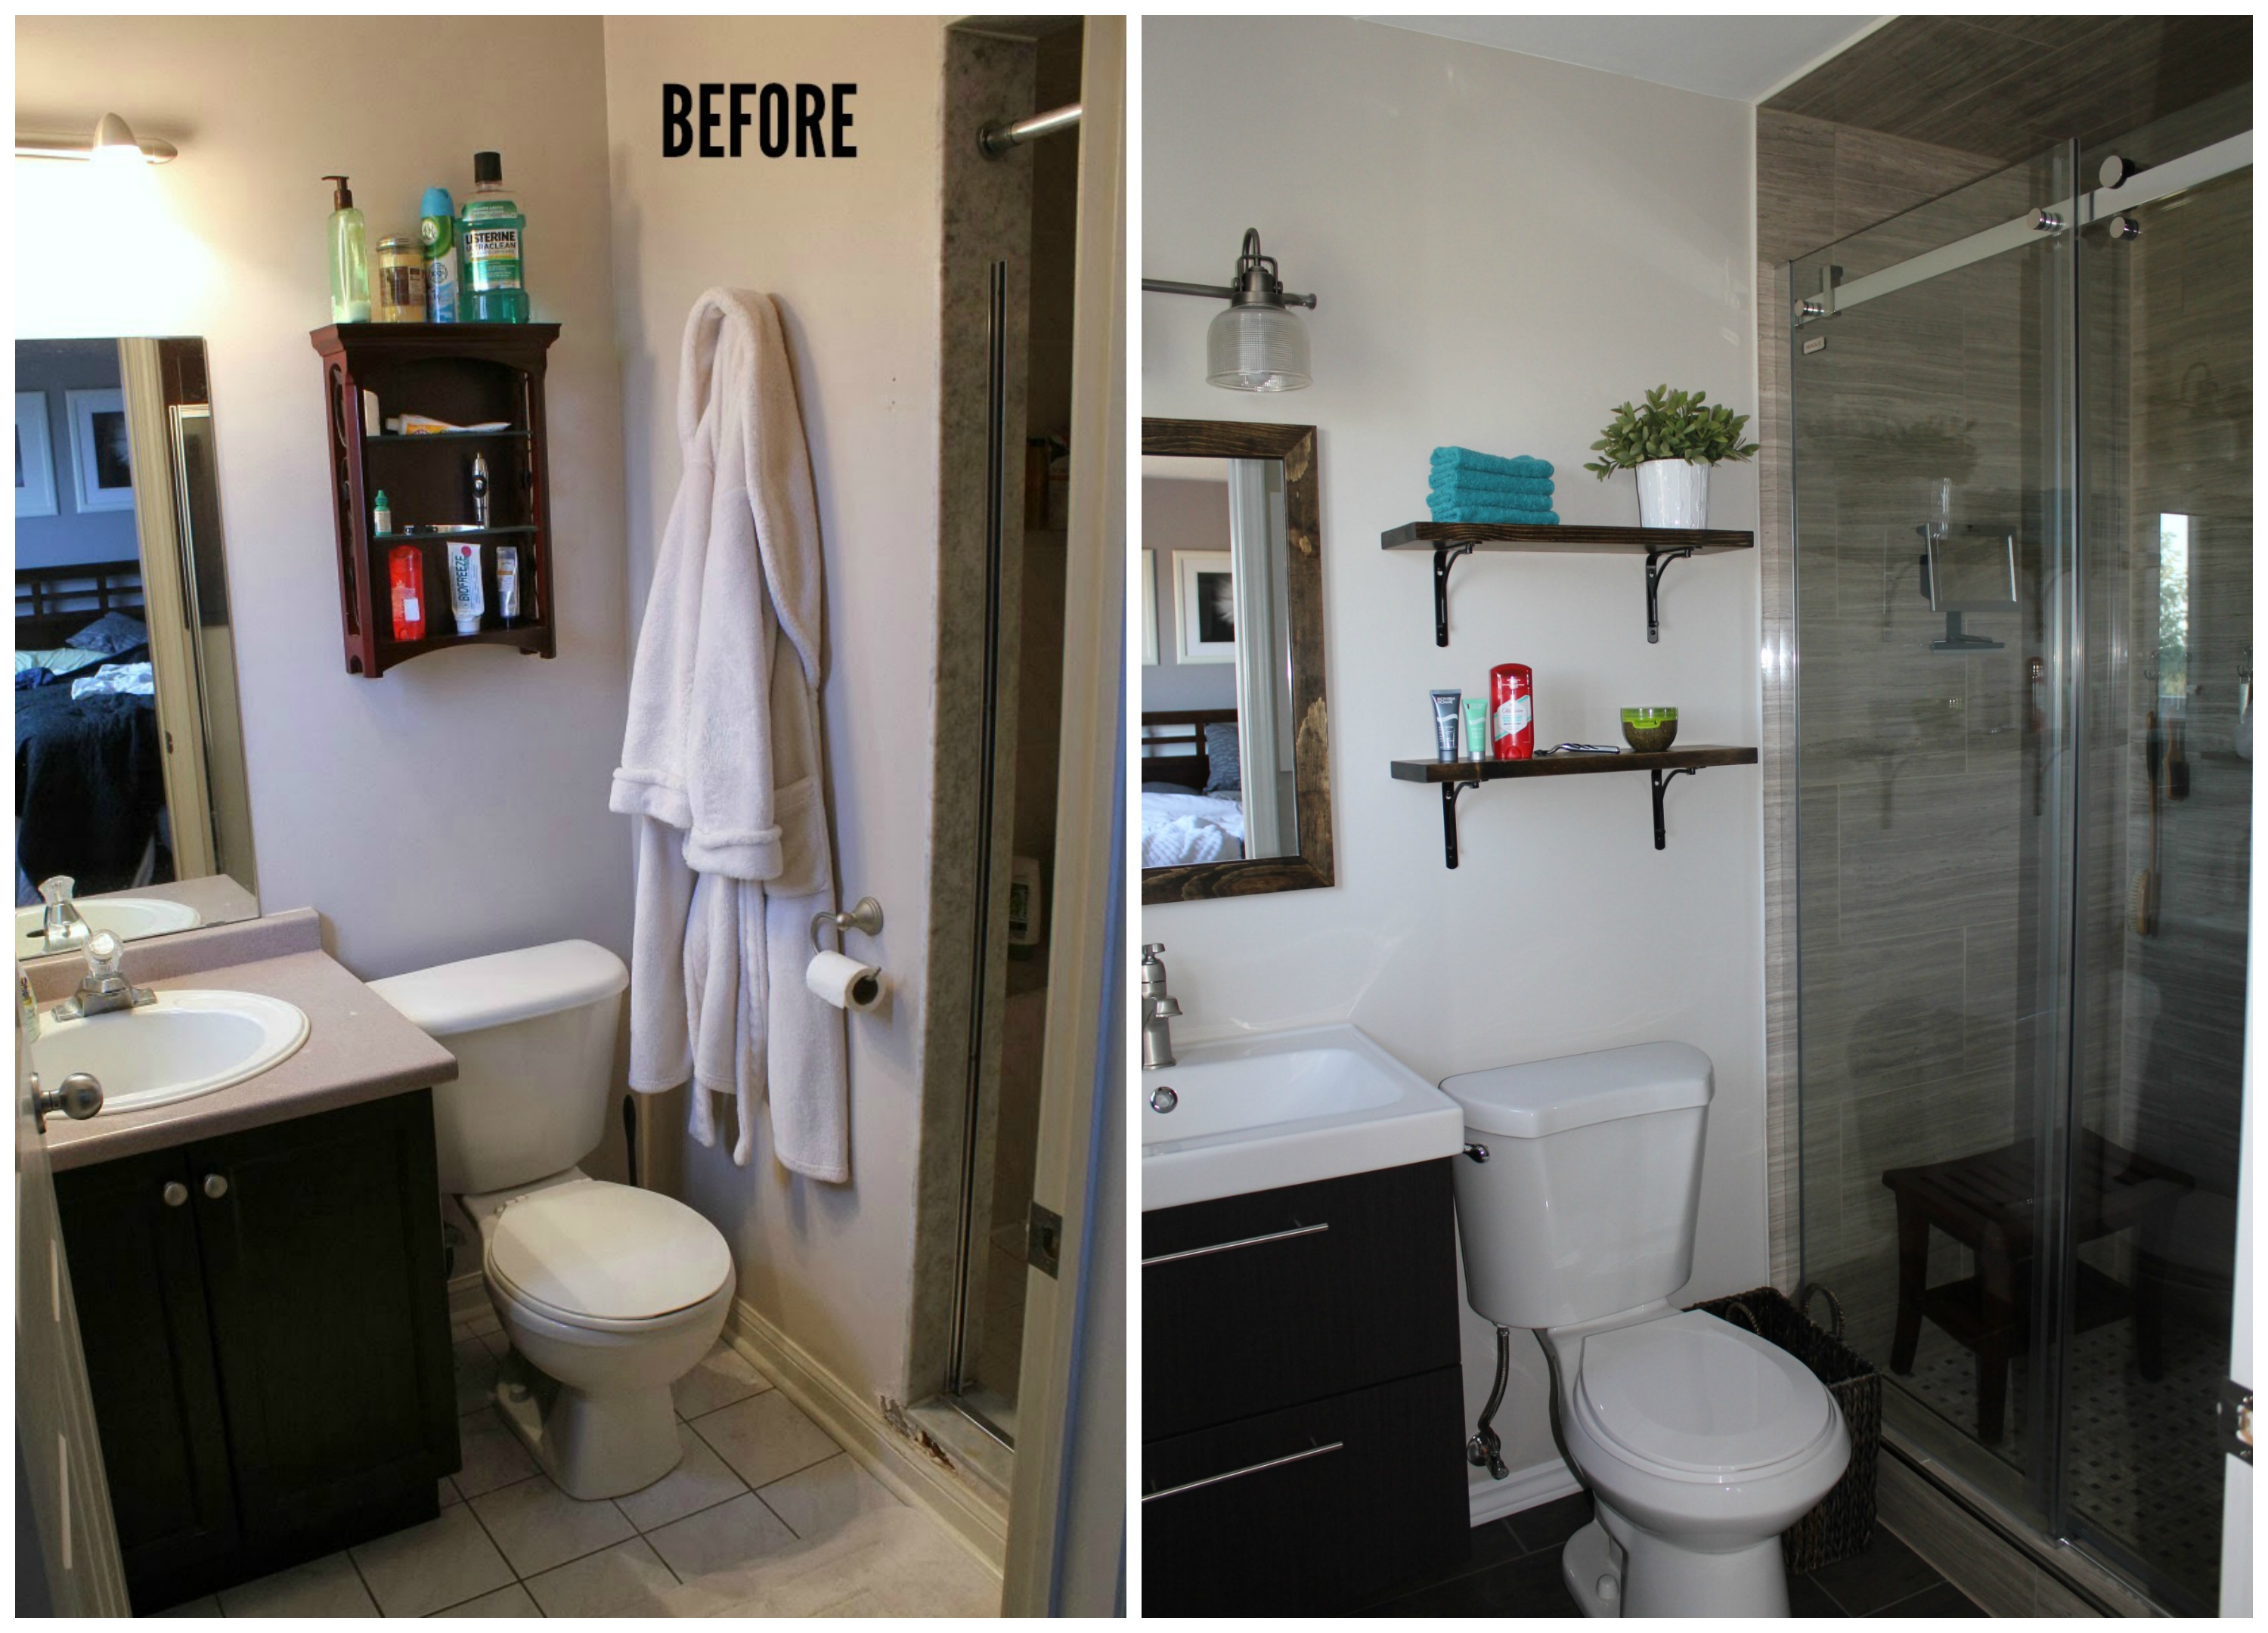 ensuite bathroom renovation tile frameless shower